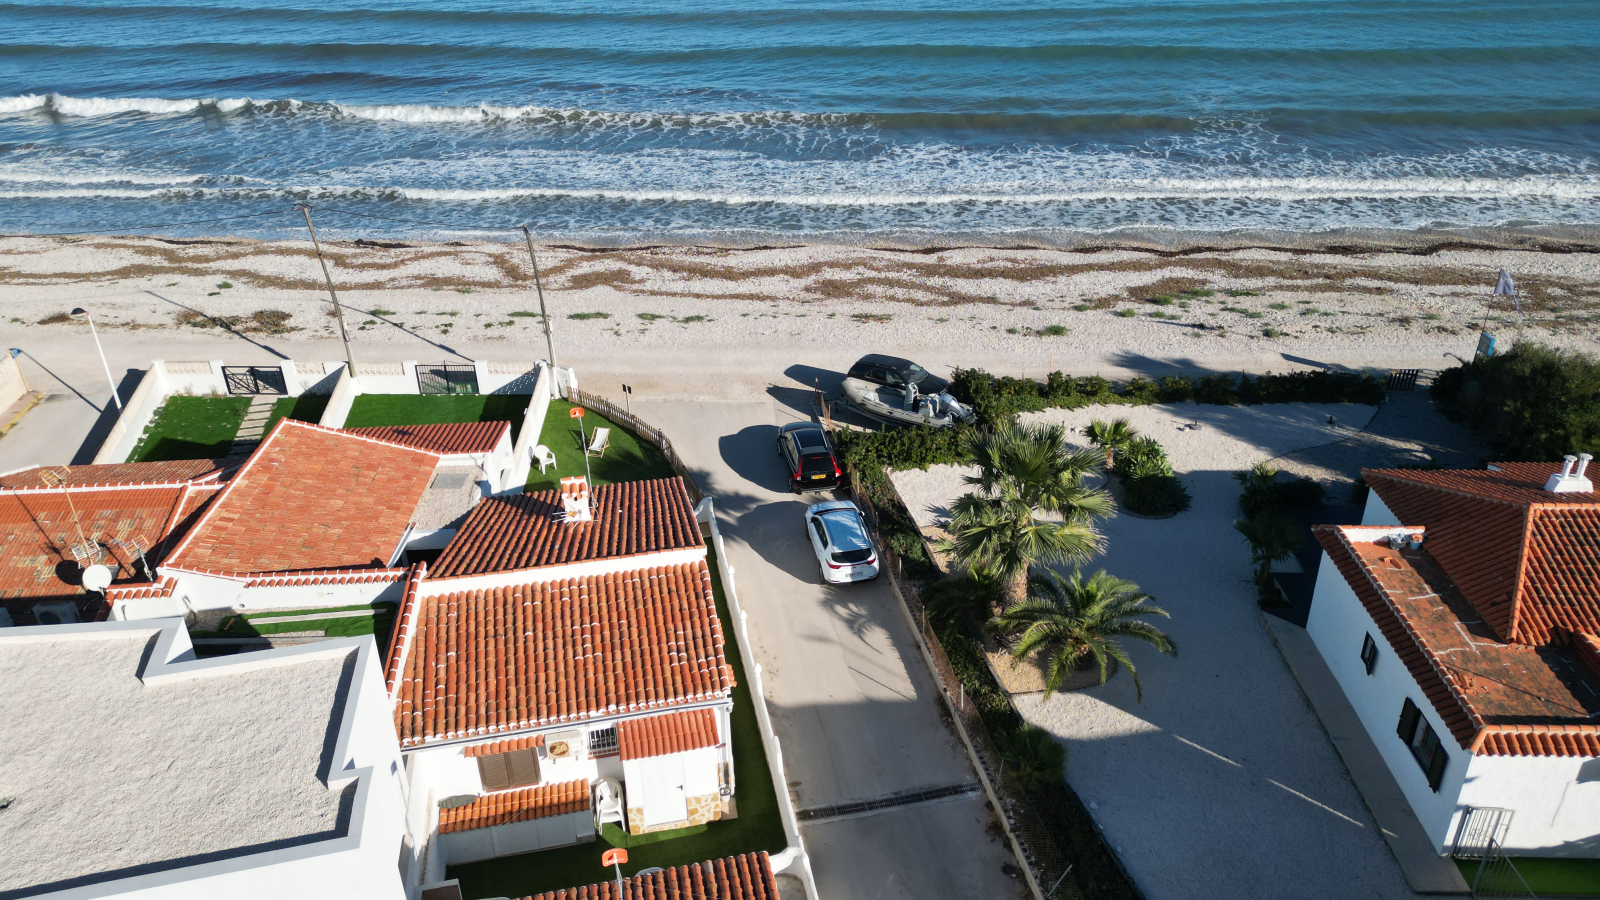 Maison de plage directement sur la plage d'Els Poblets avec 2 chambres à coucher et des vues imbattables sur la mer.